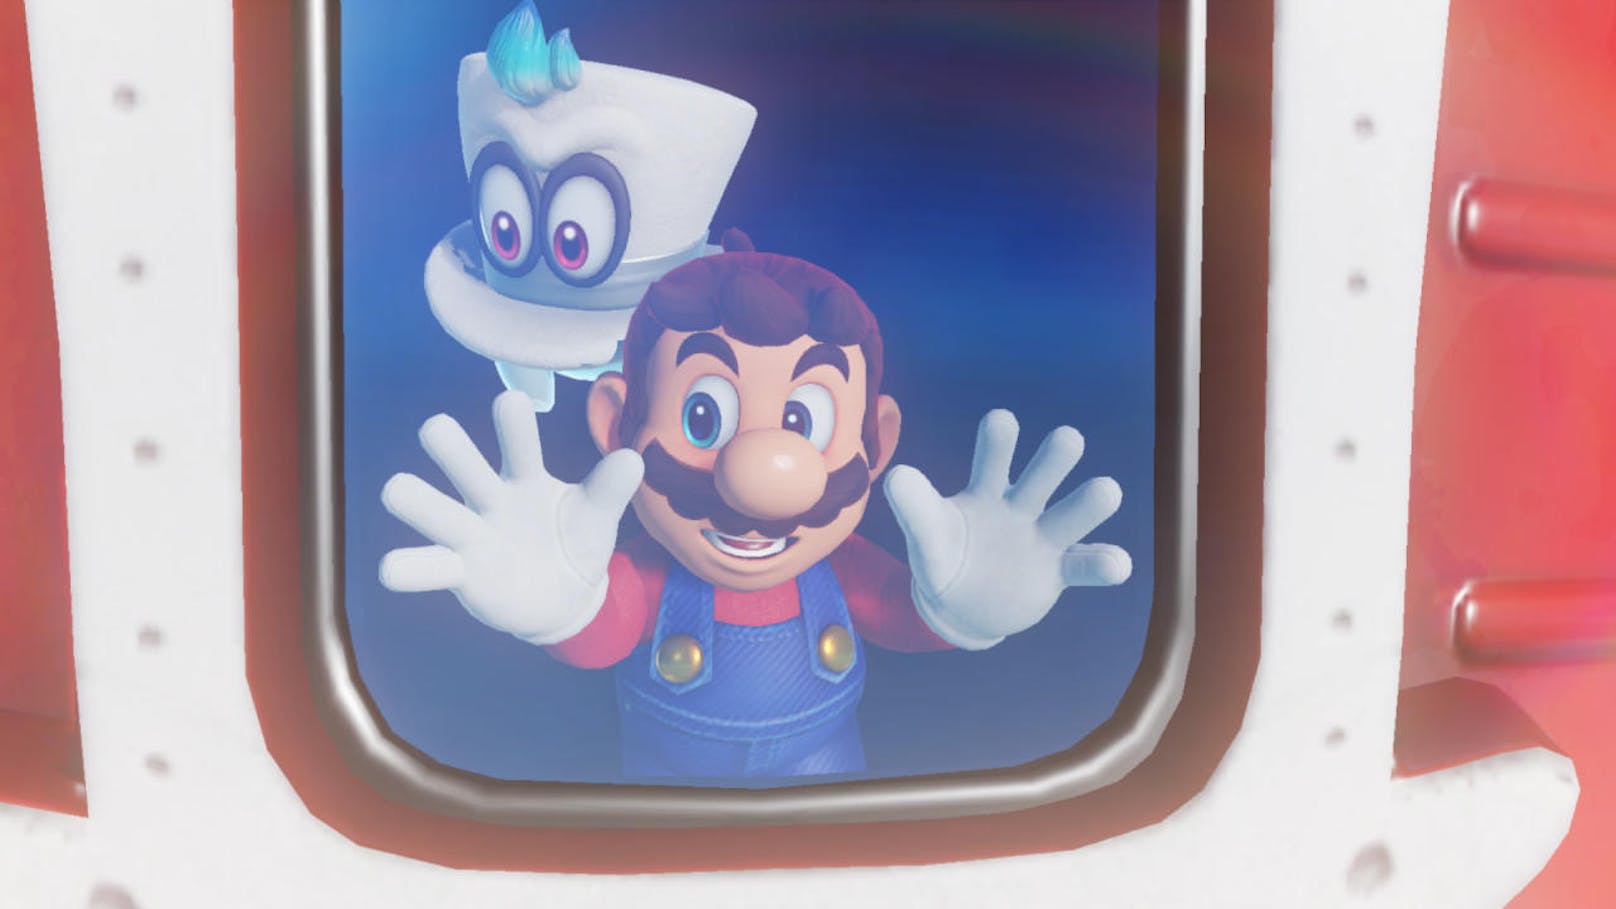 Eine frohe Osterbotschaft gibt es auch für alle Nintendo-Fans: Zwei Wochen lang gewährt der Nintendo eShop auf zahlreiche Blockbuster für Nintendo Switch und Nintendo 3DS & 2DS bis zu 60% Nachlass auf den regulären Verkaufspreis. Die Aktion endet am Donnerstag, dem 25. April um 23:59 Uhr. nter anderem gibt es die Switch -Titel Super Mario Odyssey (33% Nachlass), Mario + Rabbids Kingdom Battle (50% Nachlass) L.A. Noire (60% Nachlass), Xenoblade Chronicles 2 (33% Nachlass) oder DOOM (50% Nachlass) stark verbilligt. Angebote gibt es ebenso für die Spiele des DS-Handhelds.